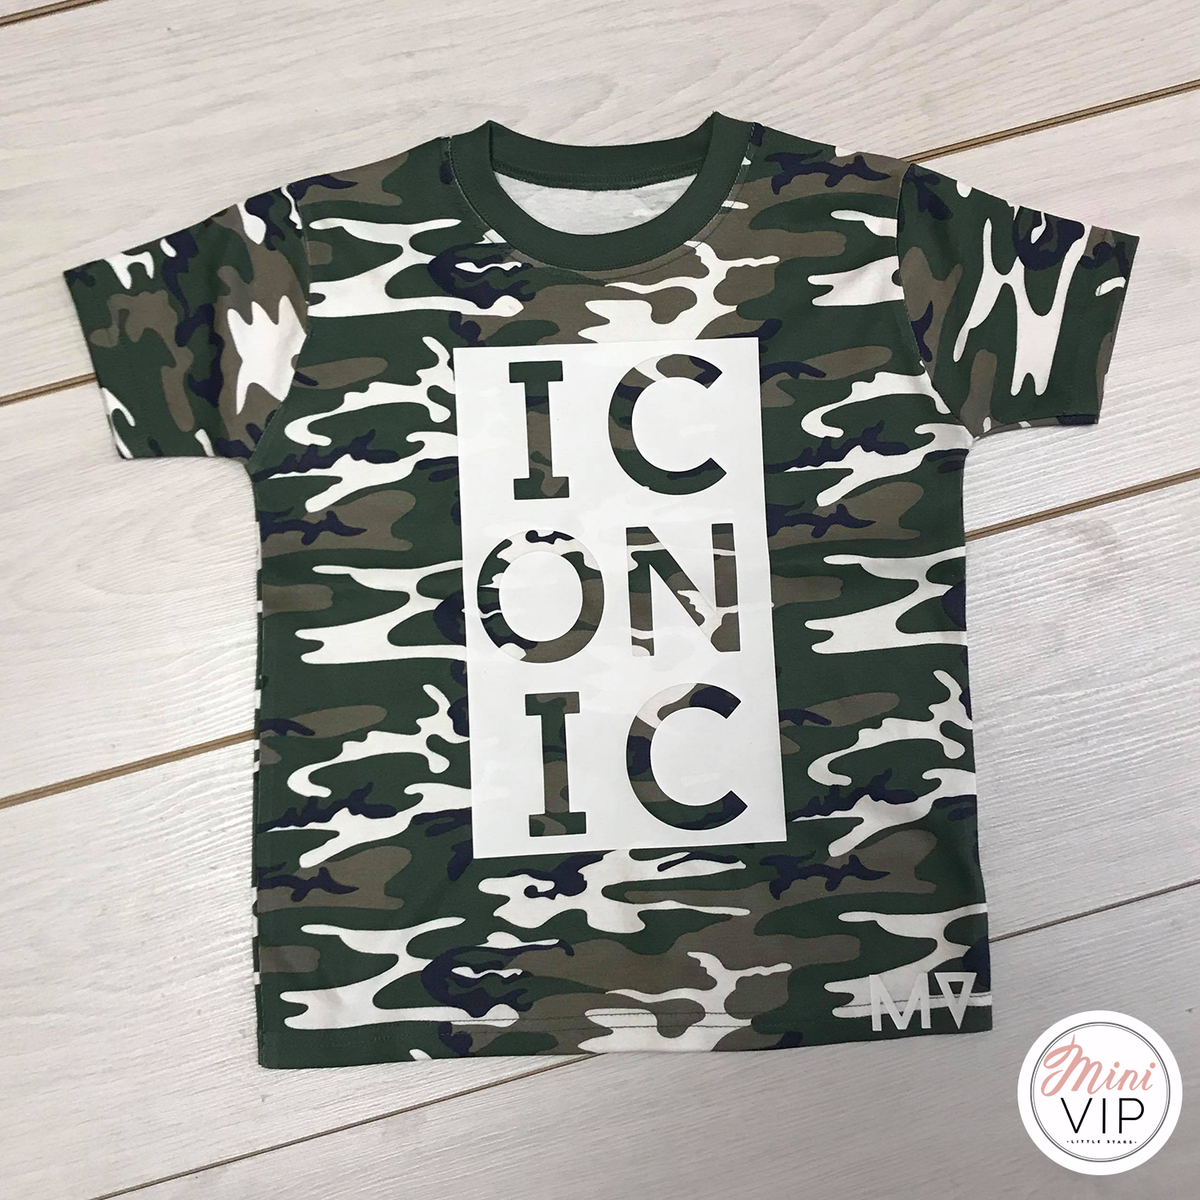 Iconic - Camo t-shirt - MV originals